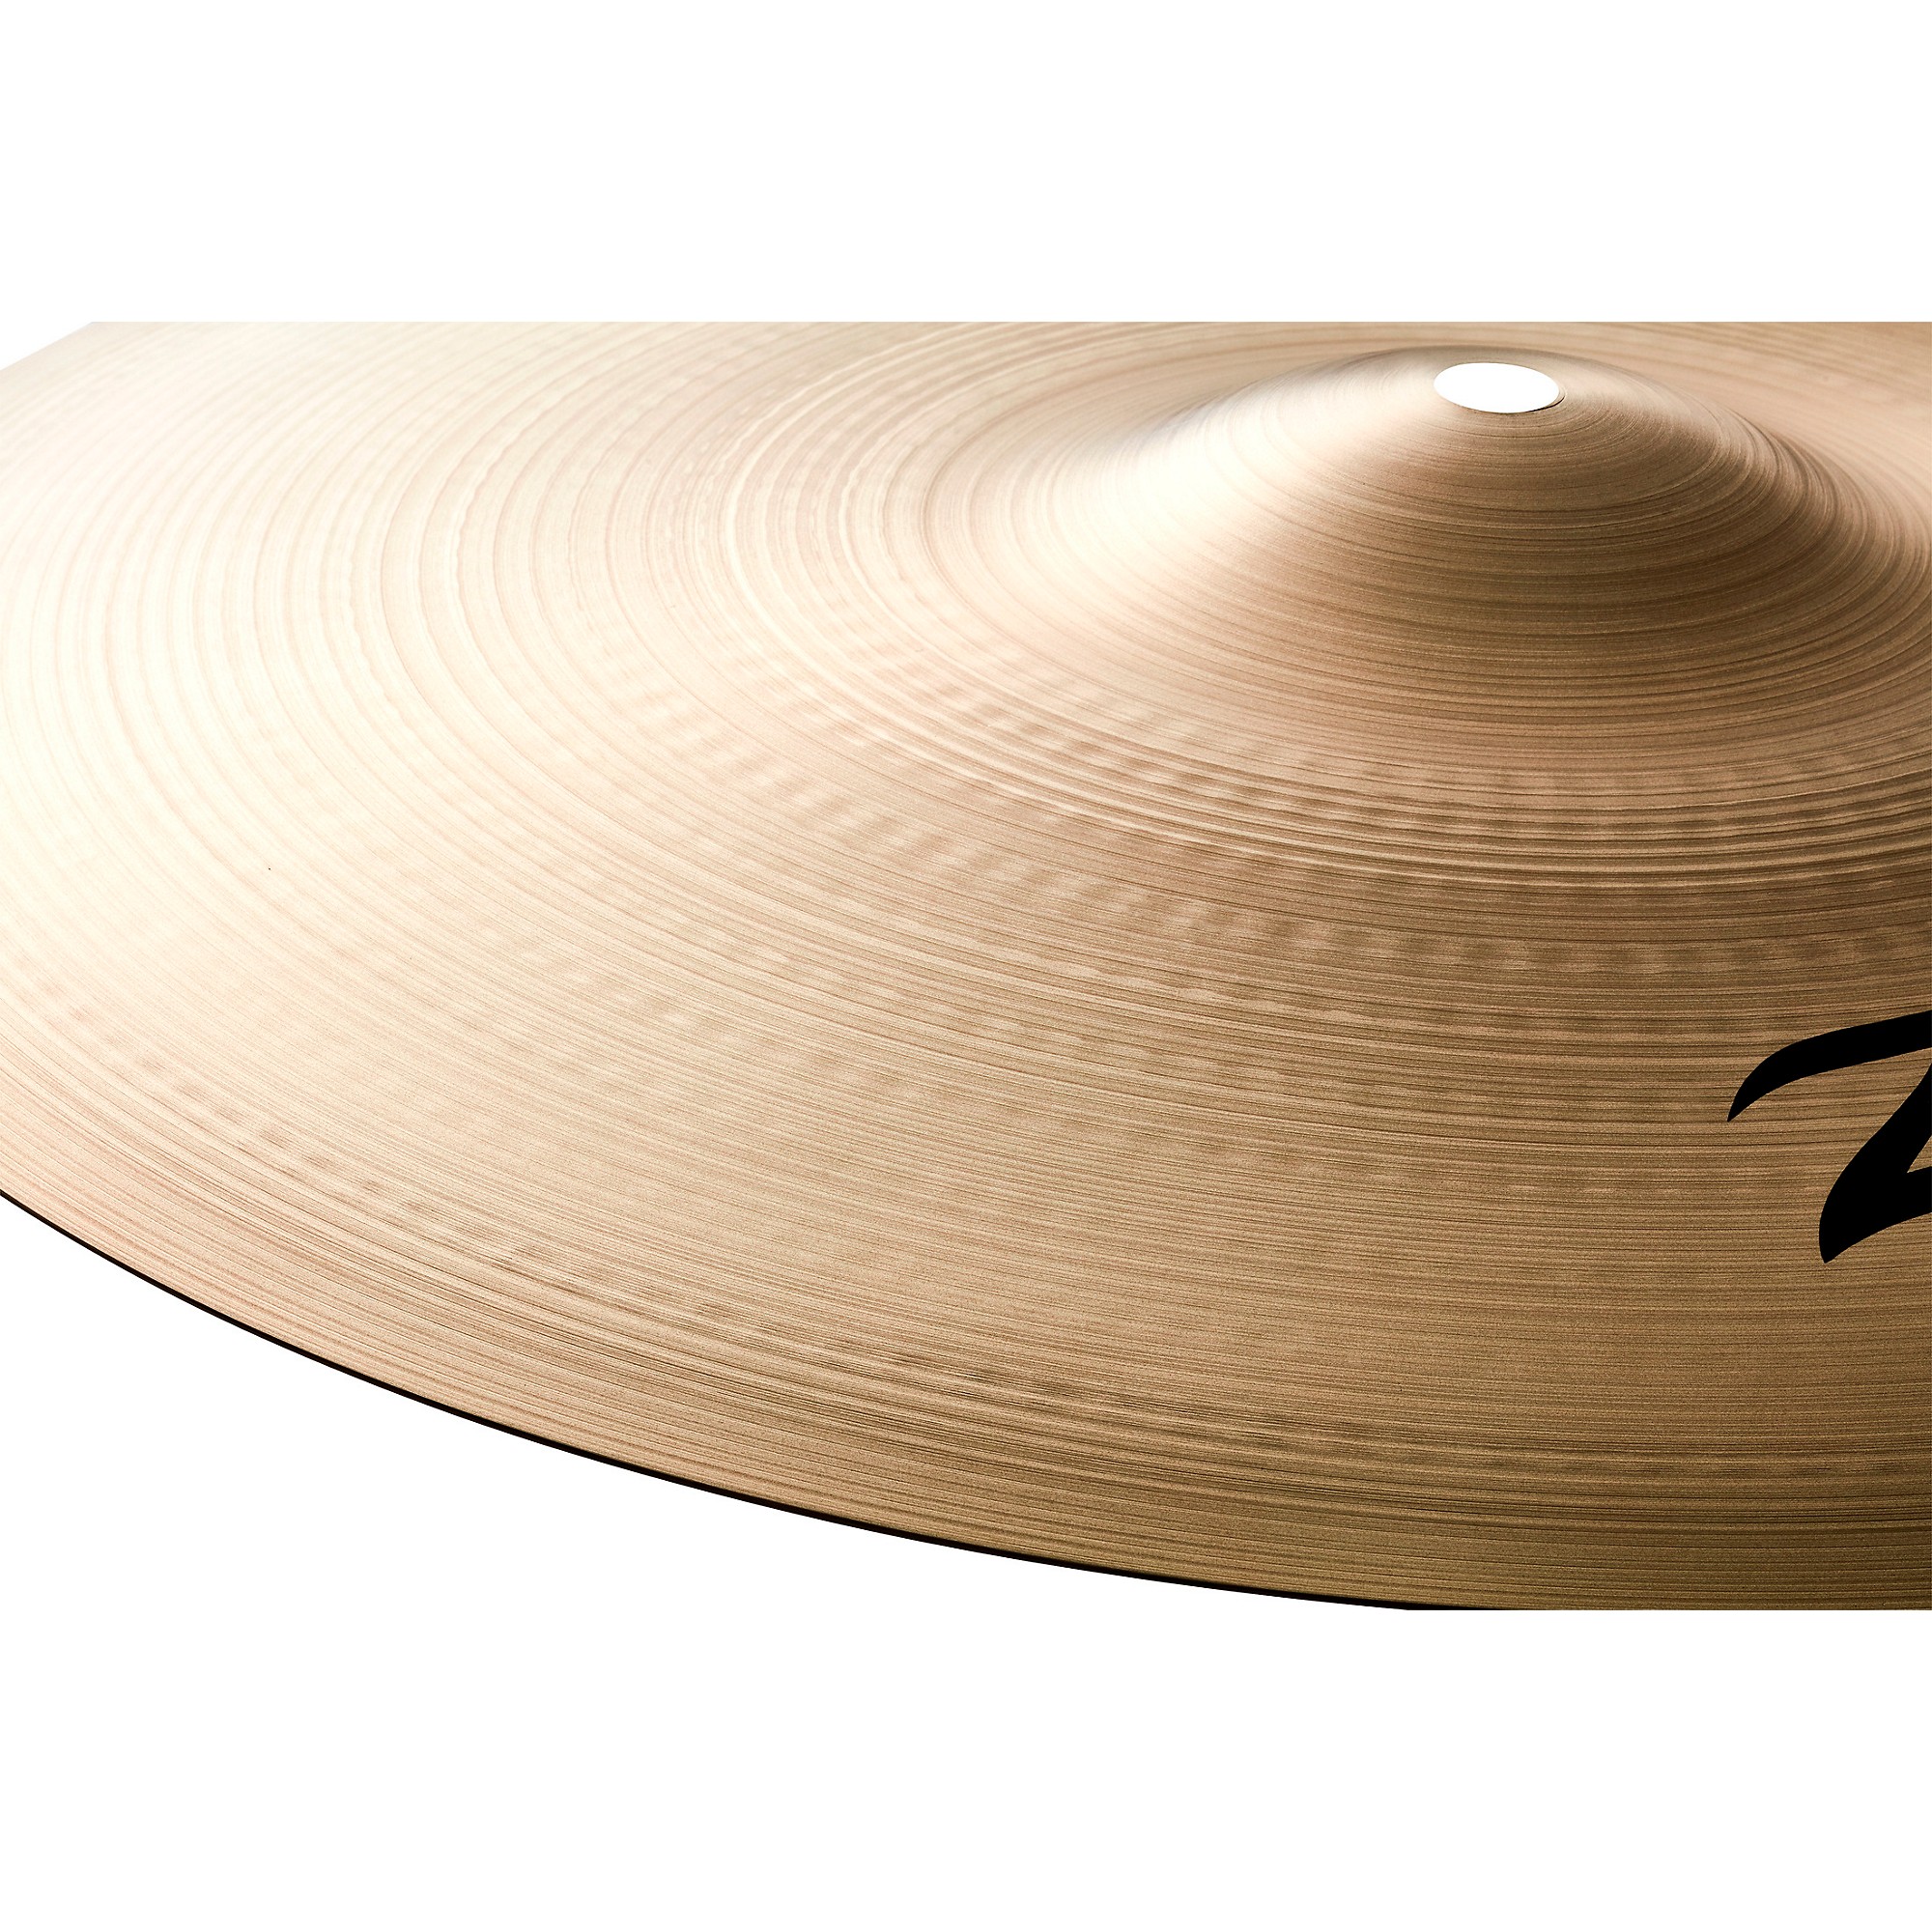 Zildjian A Series Thin Crash Cymbal 16 in. | Guitar Center